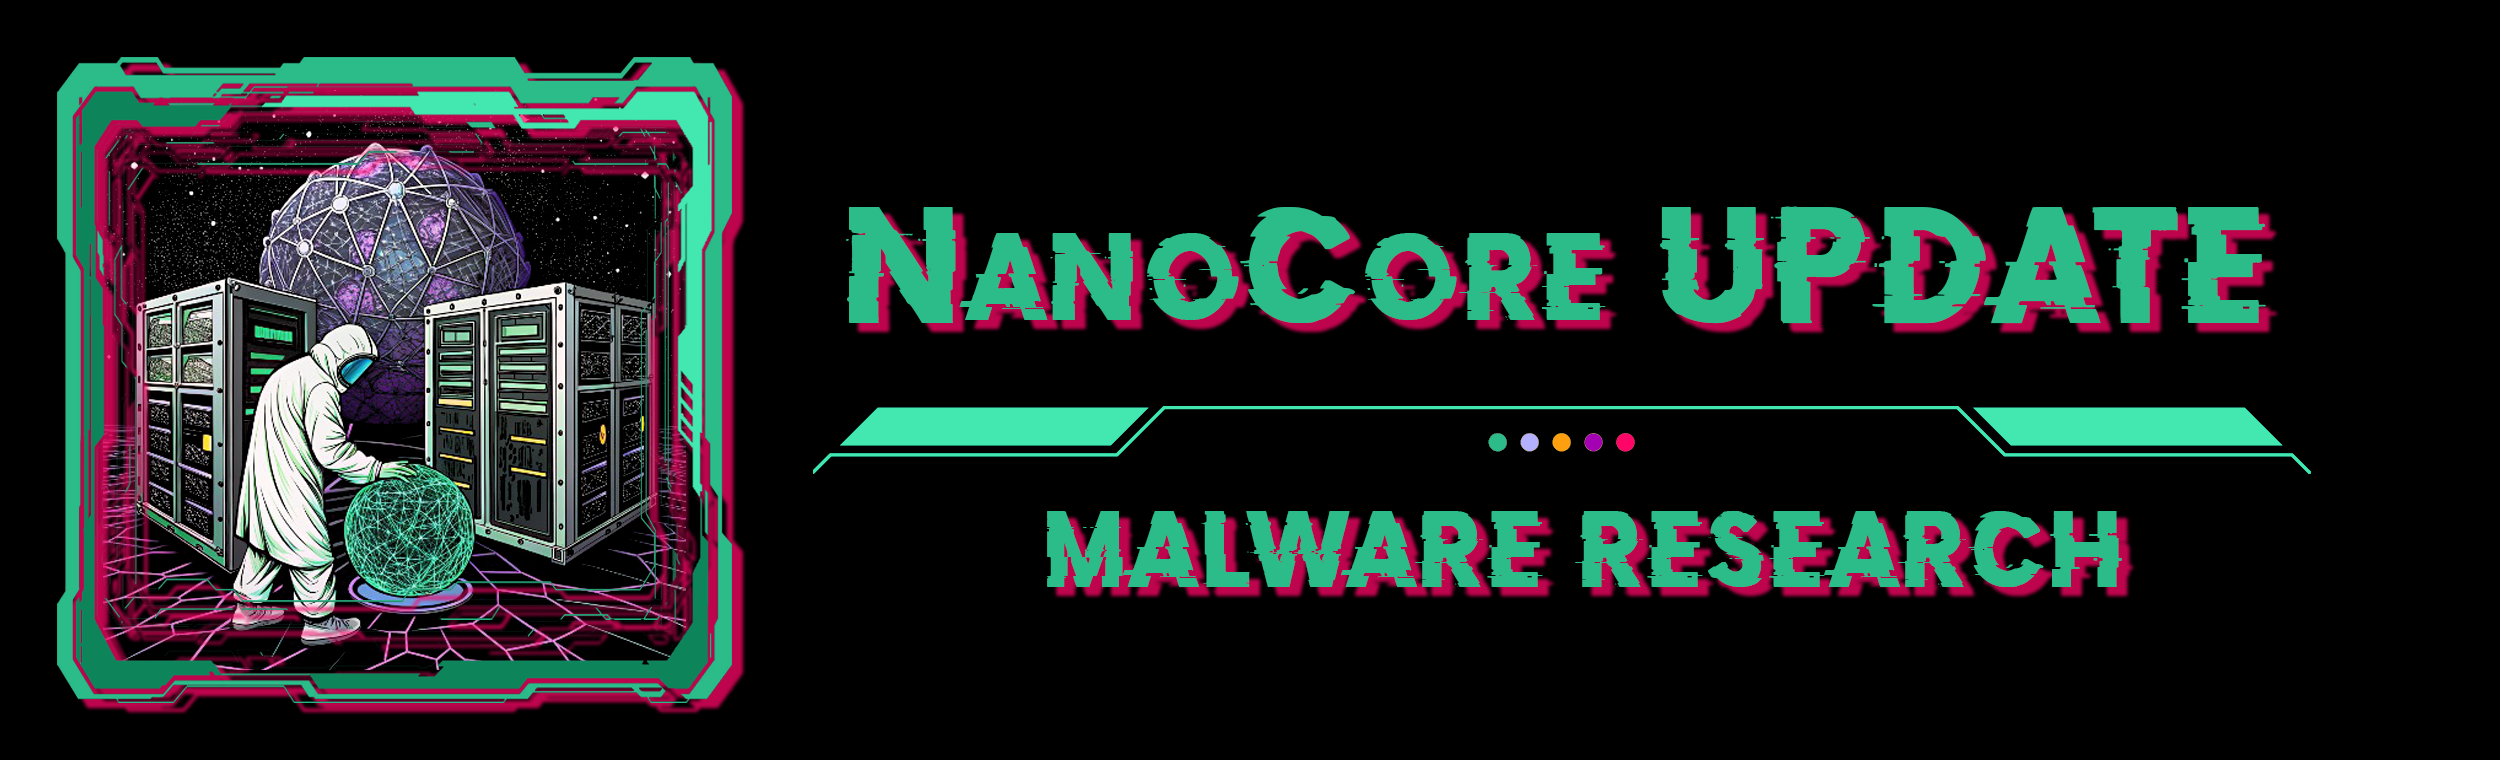 NanoCore Update